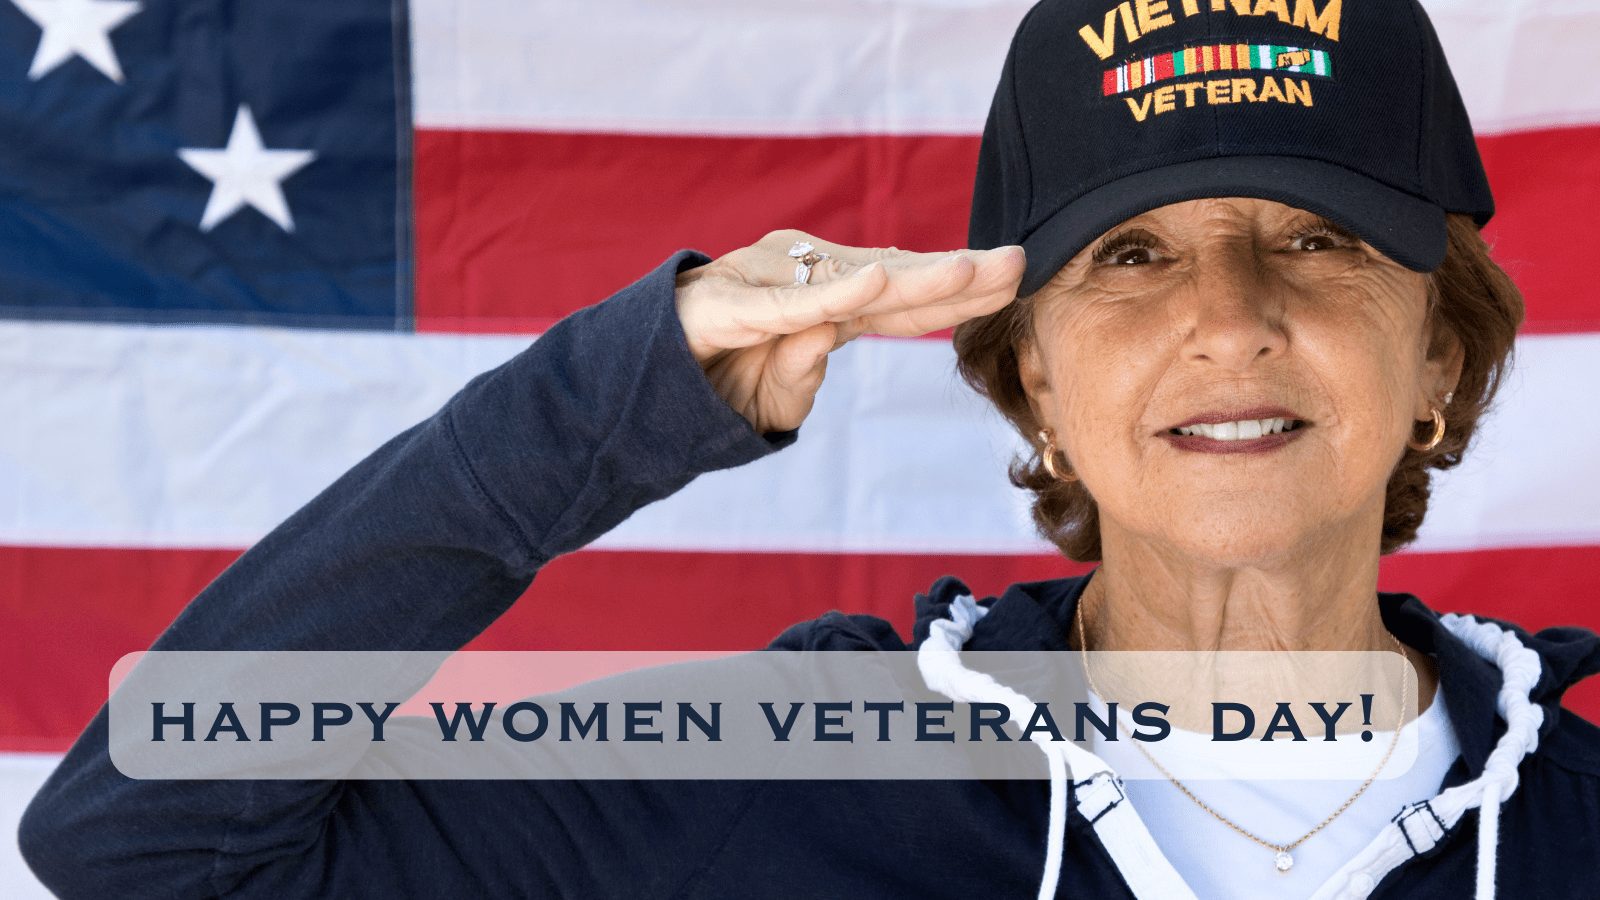 Happy Women Veterans Day